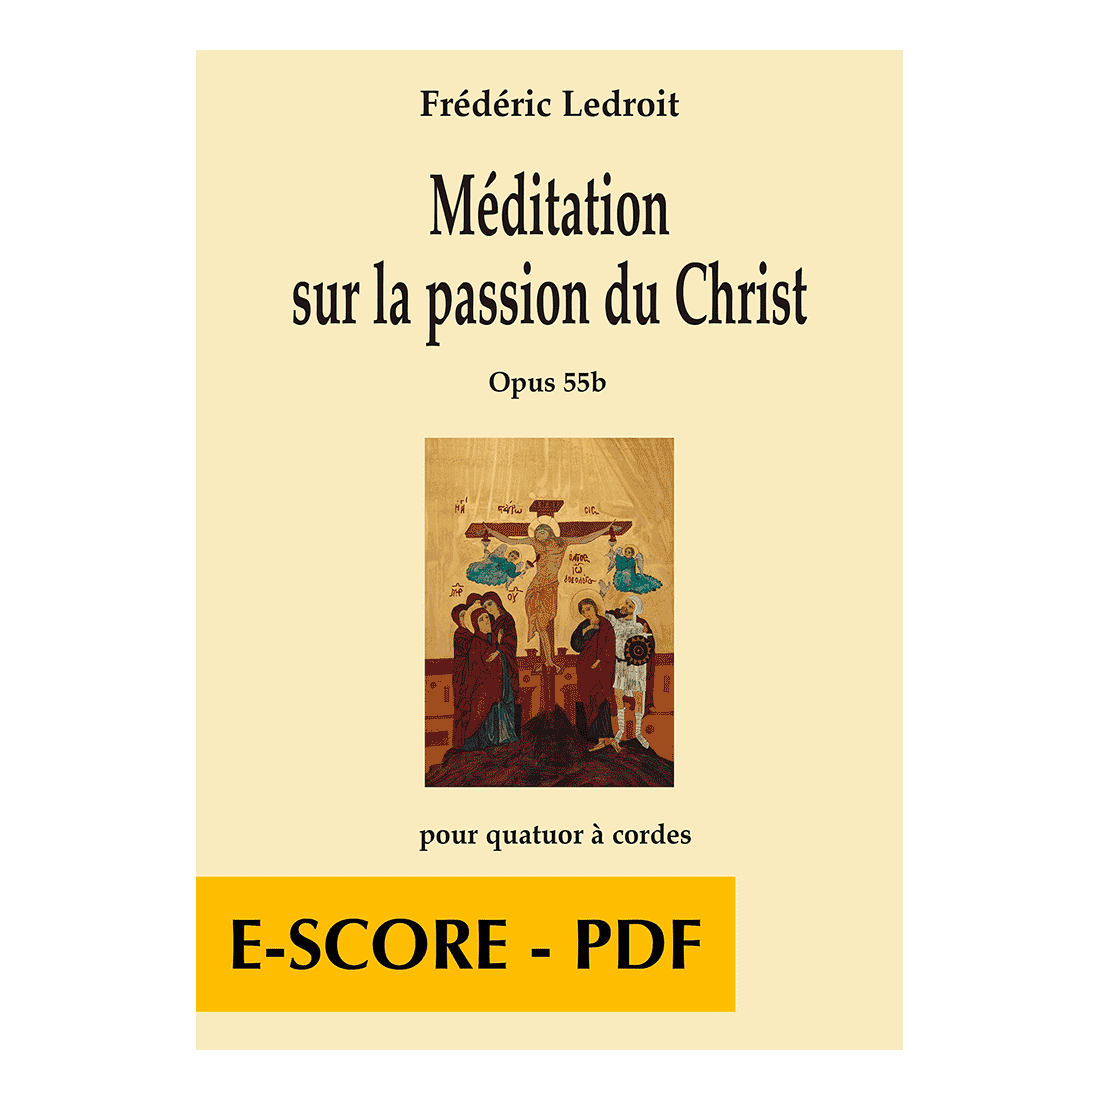 Méditation sur la passion du Christ für Streichquartett - E-score PDF